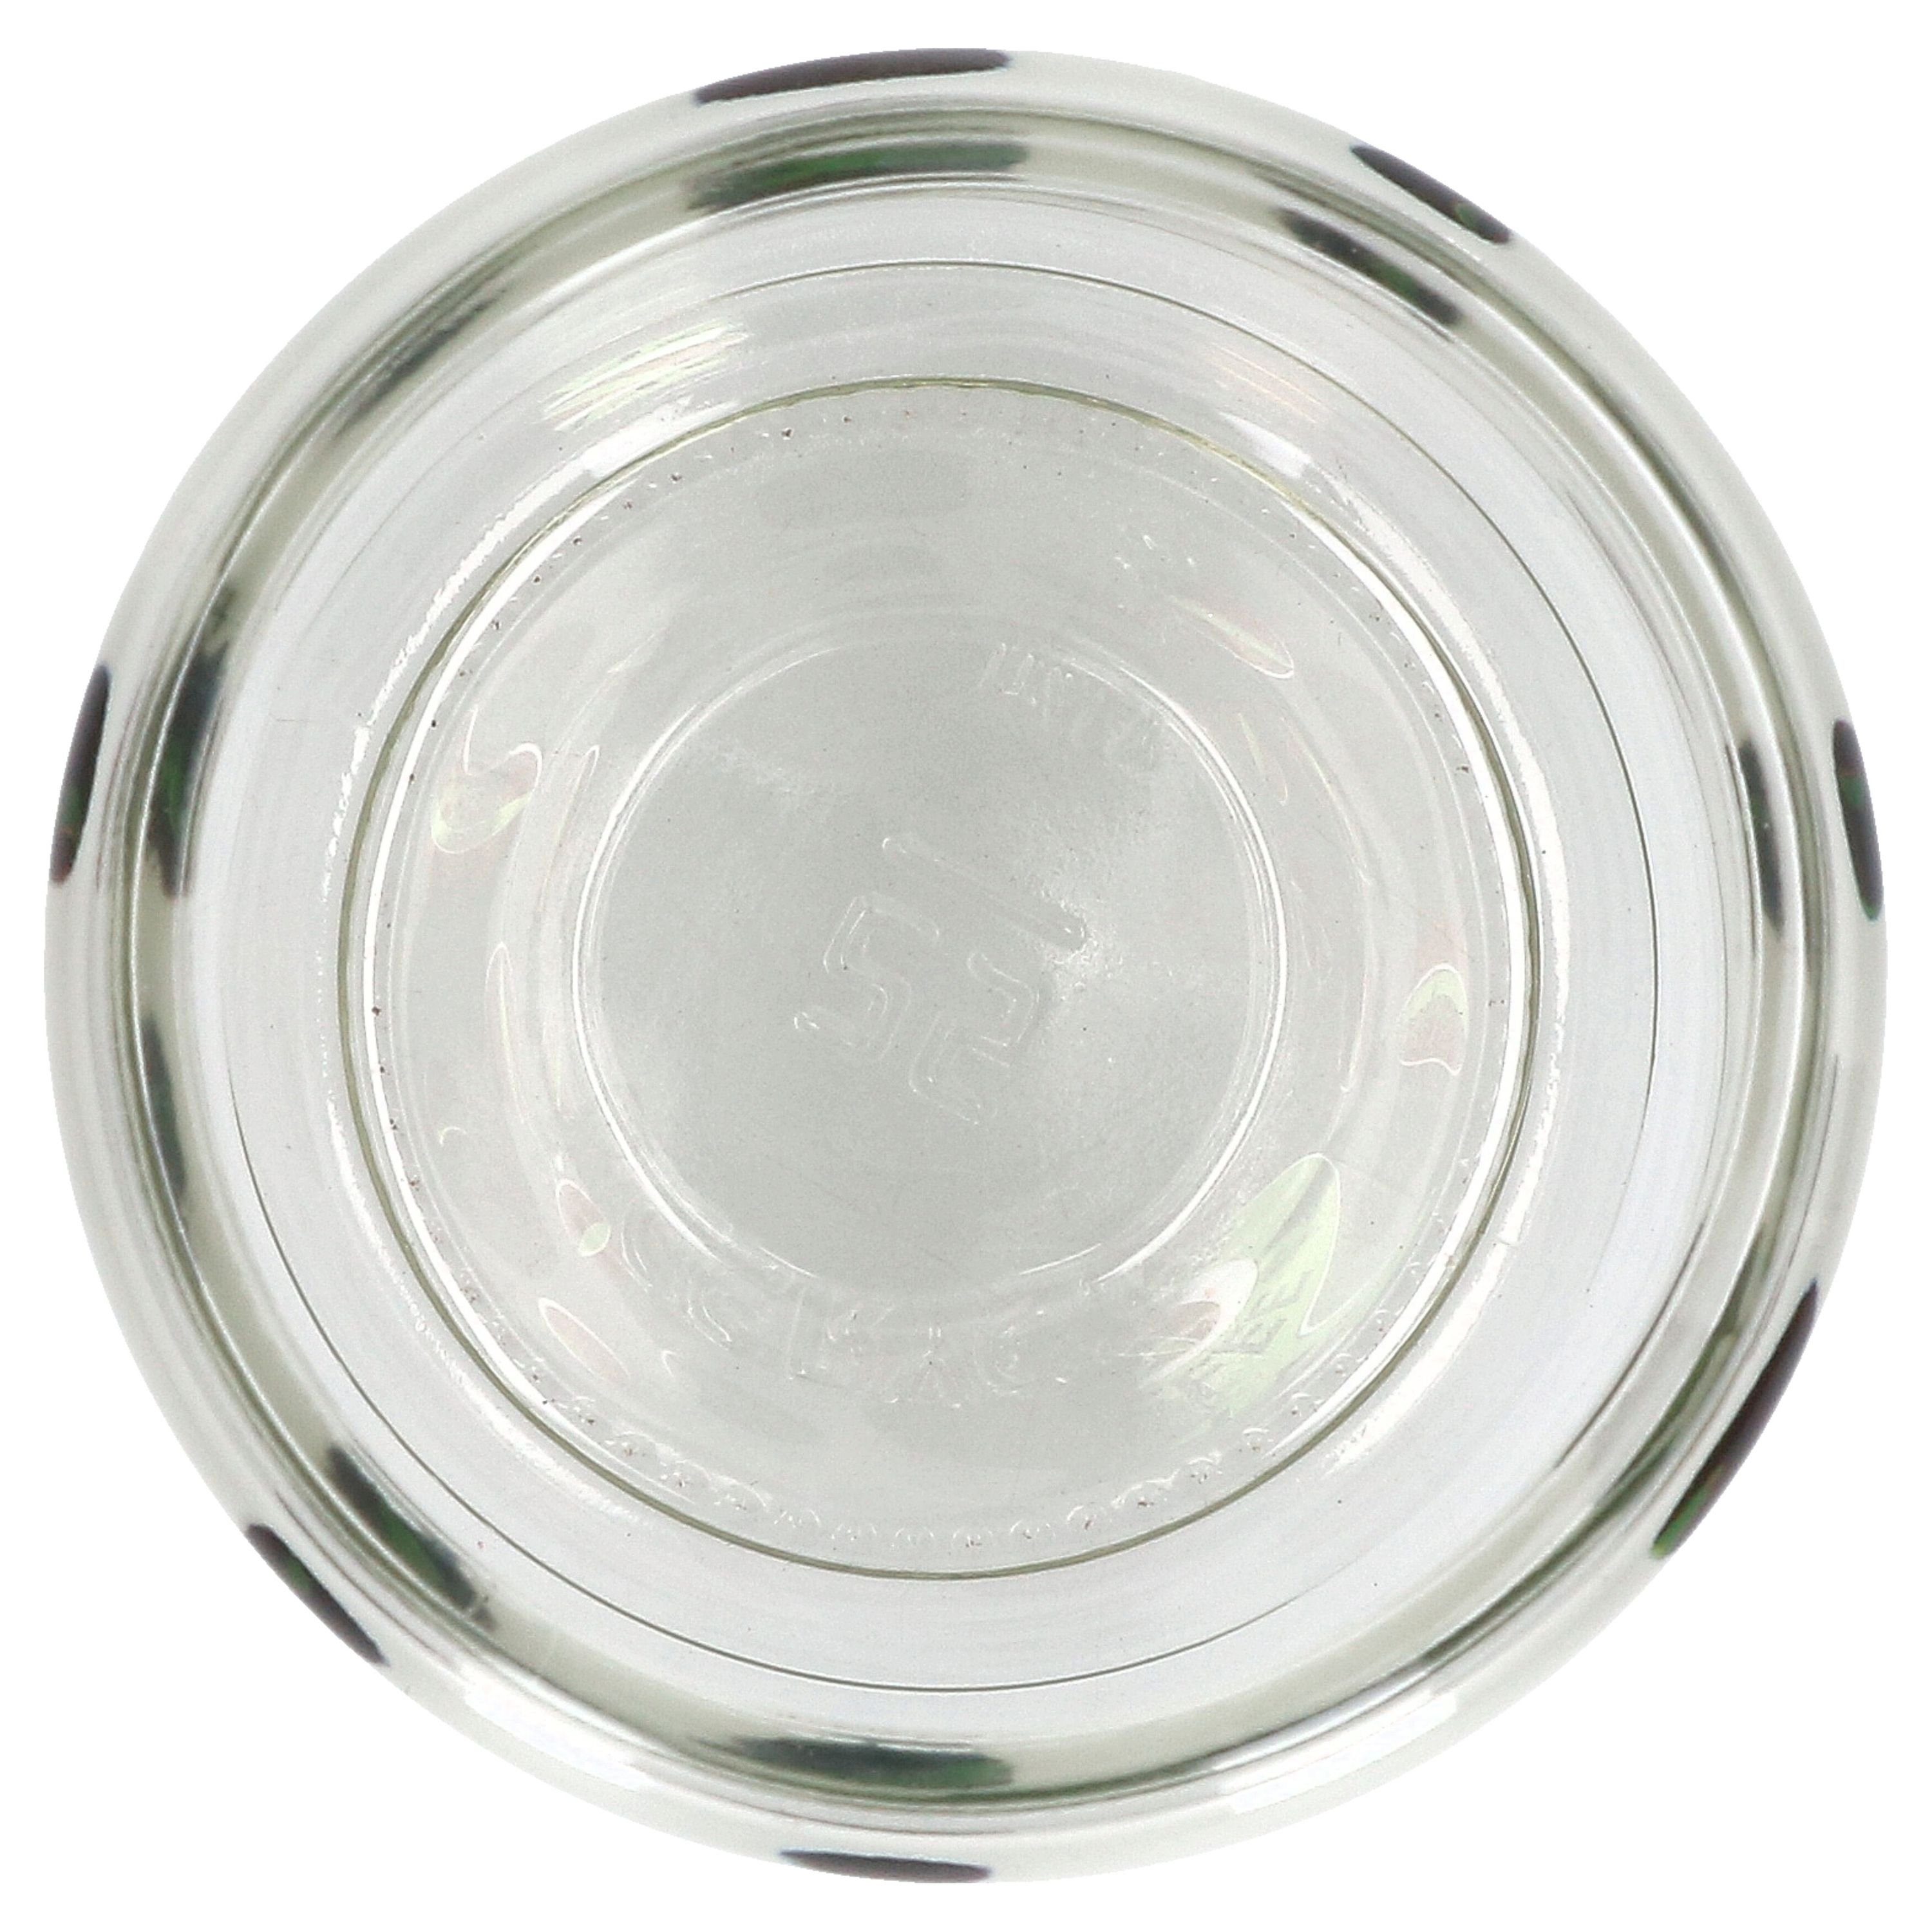 Cremona Breker & - Breker Dose & Ritzenhoff 806199 Vorratsglas Glas grün 700ml Ritzenhoff